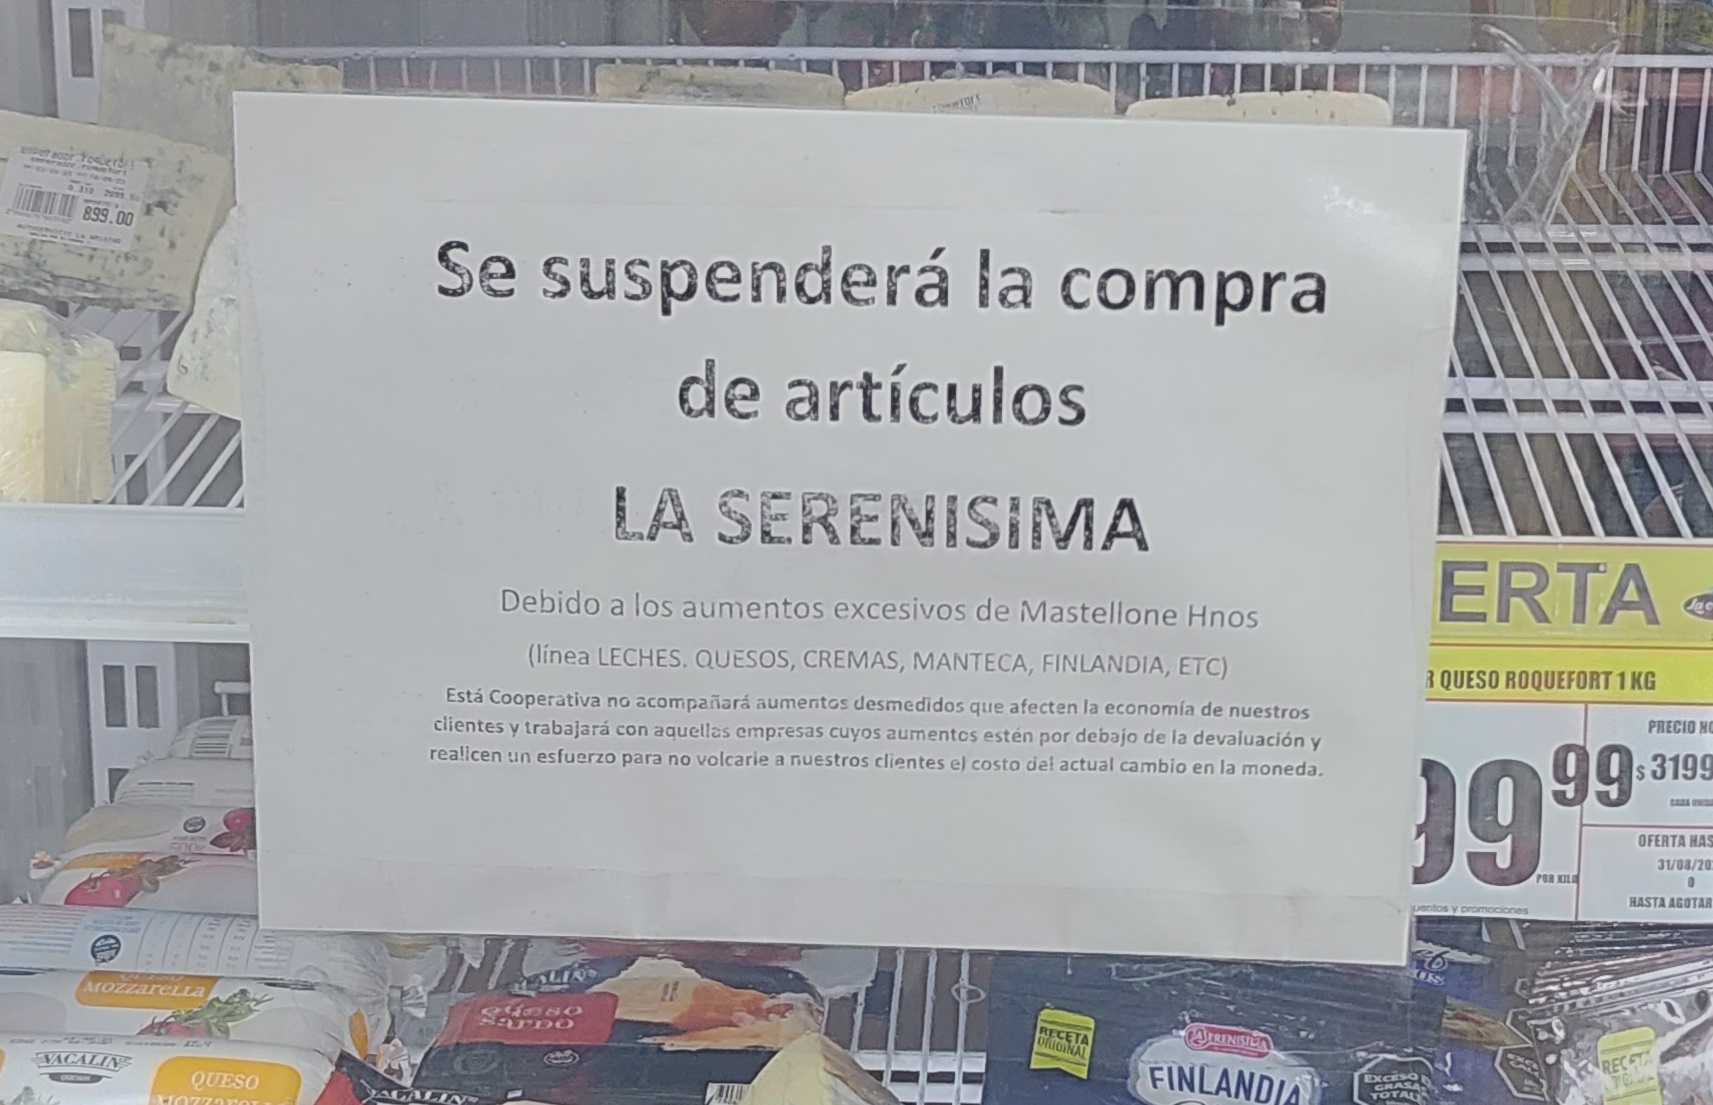 El 23 de agosto la Cooperativa anunció que dejaba de comprar a La Serenísima.